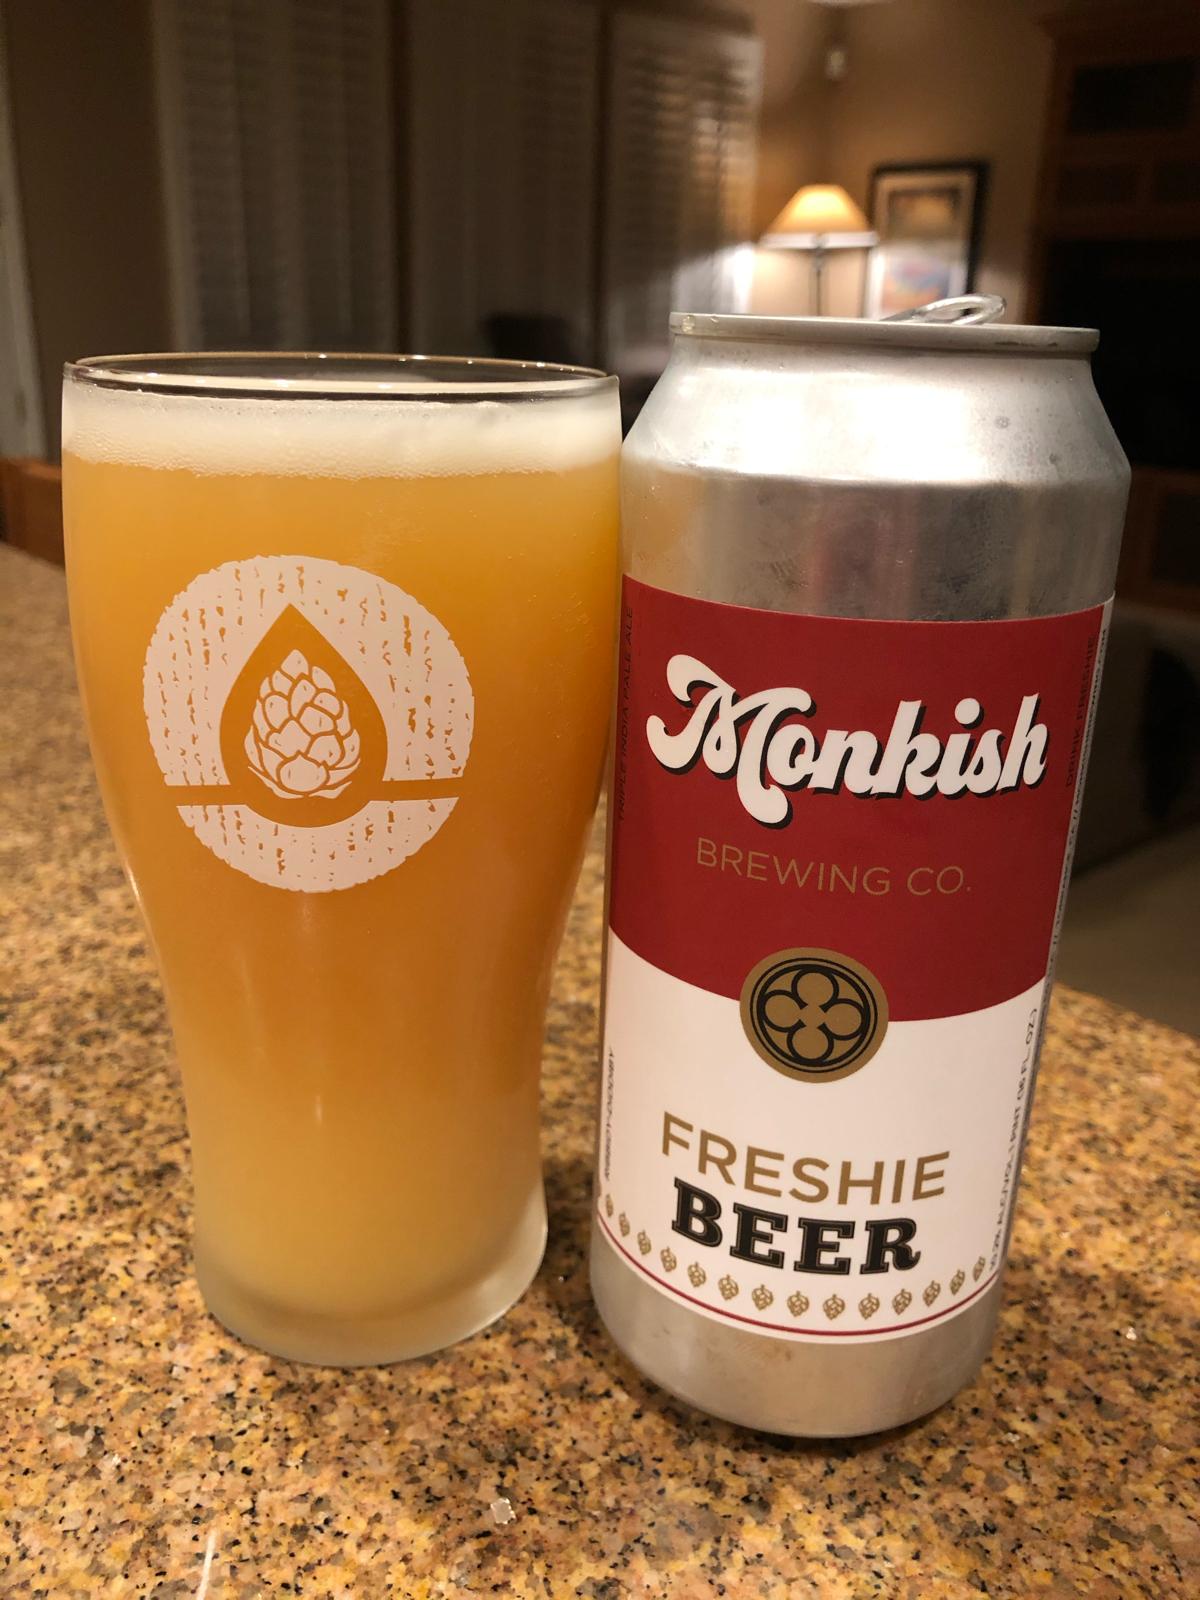 Freshie Beer